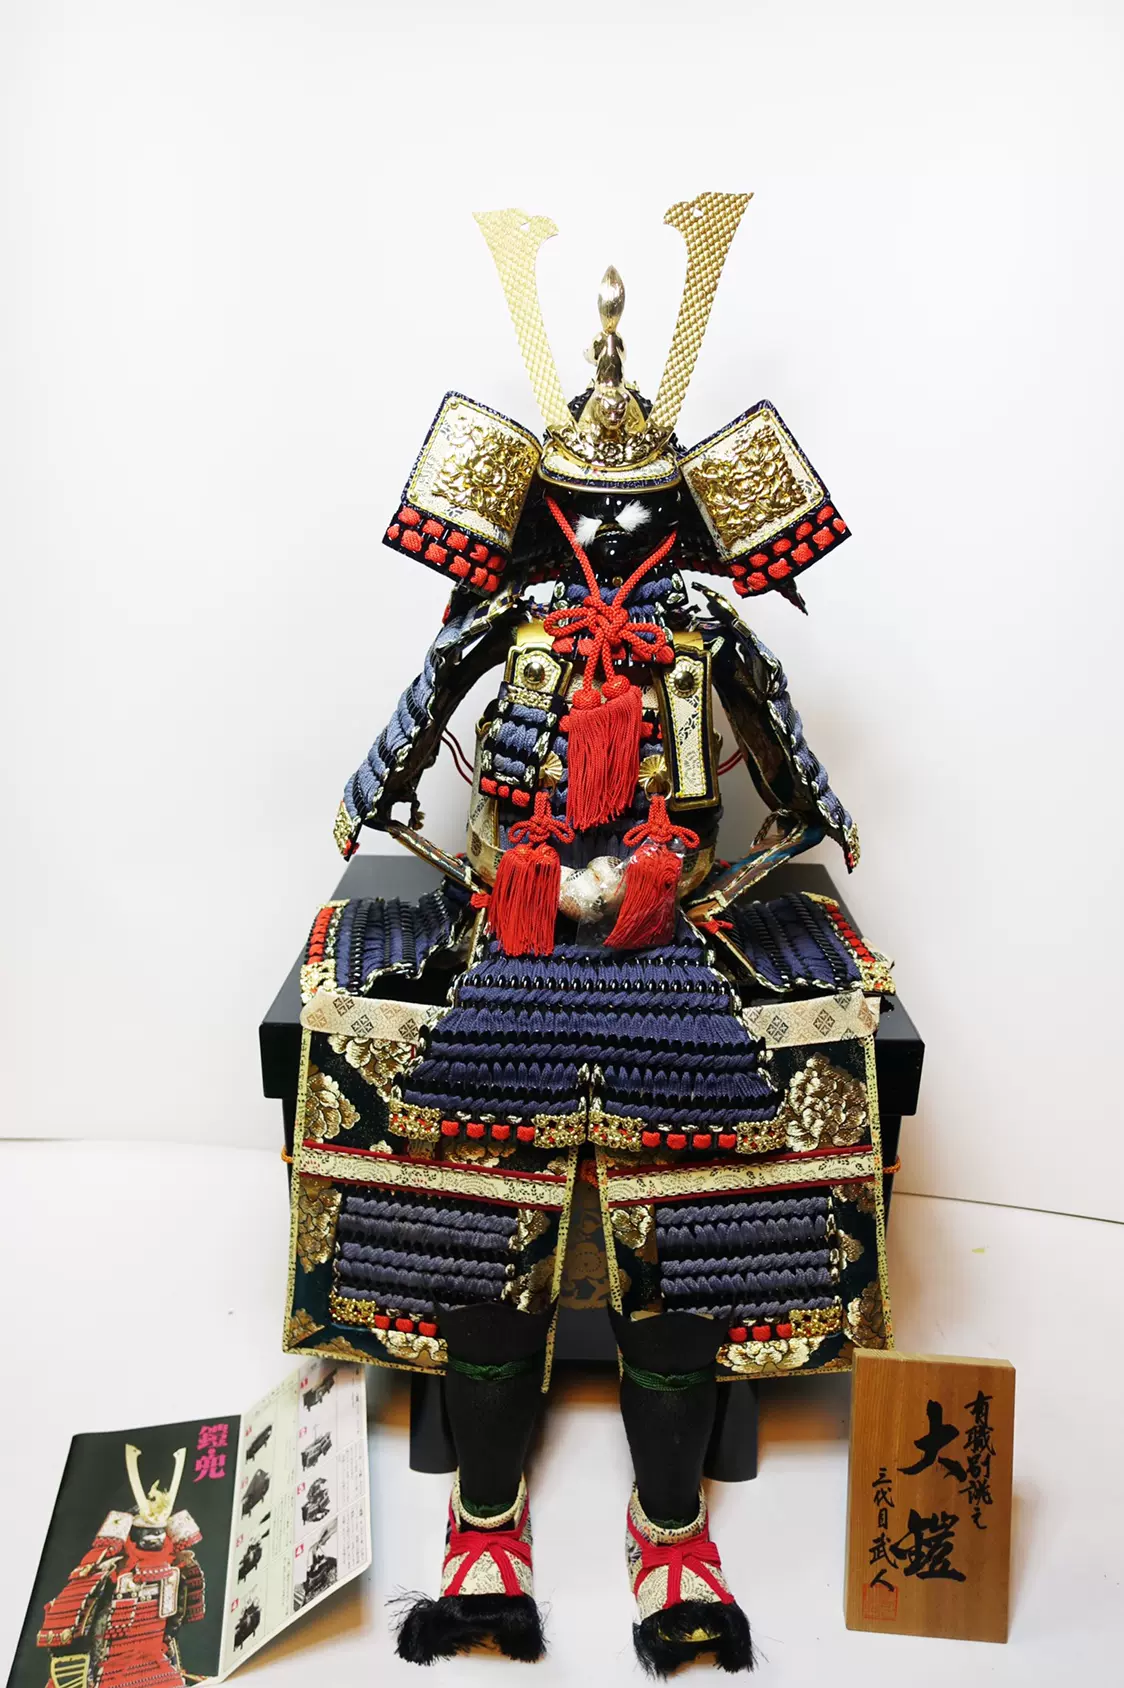 日本彫金五月人形铠甲胄兜武士头盔龙玉作日料寿司店摆件装饰品-Taobao